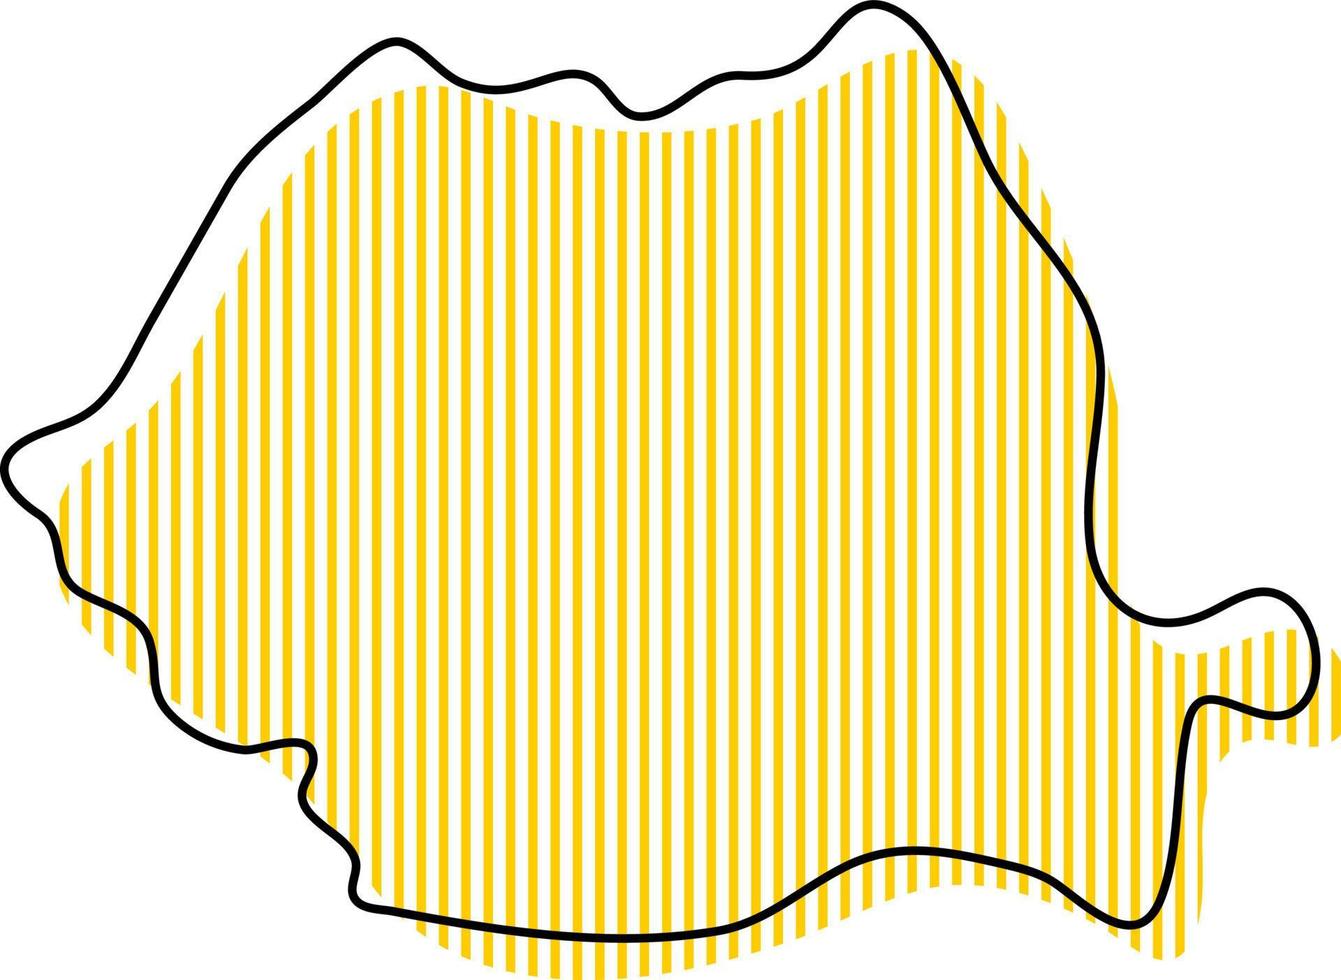 stilisierte einfache Übersichtskarte von Rumänien-Symbol. vektor